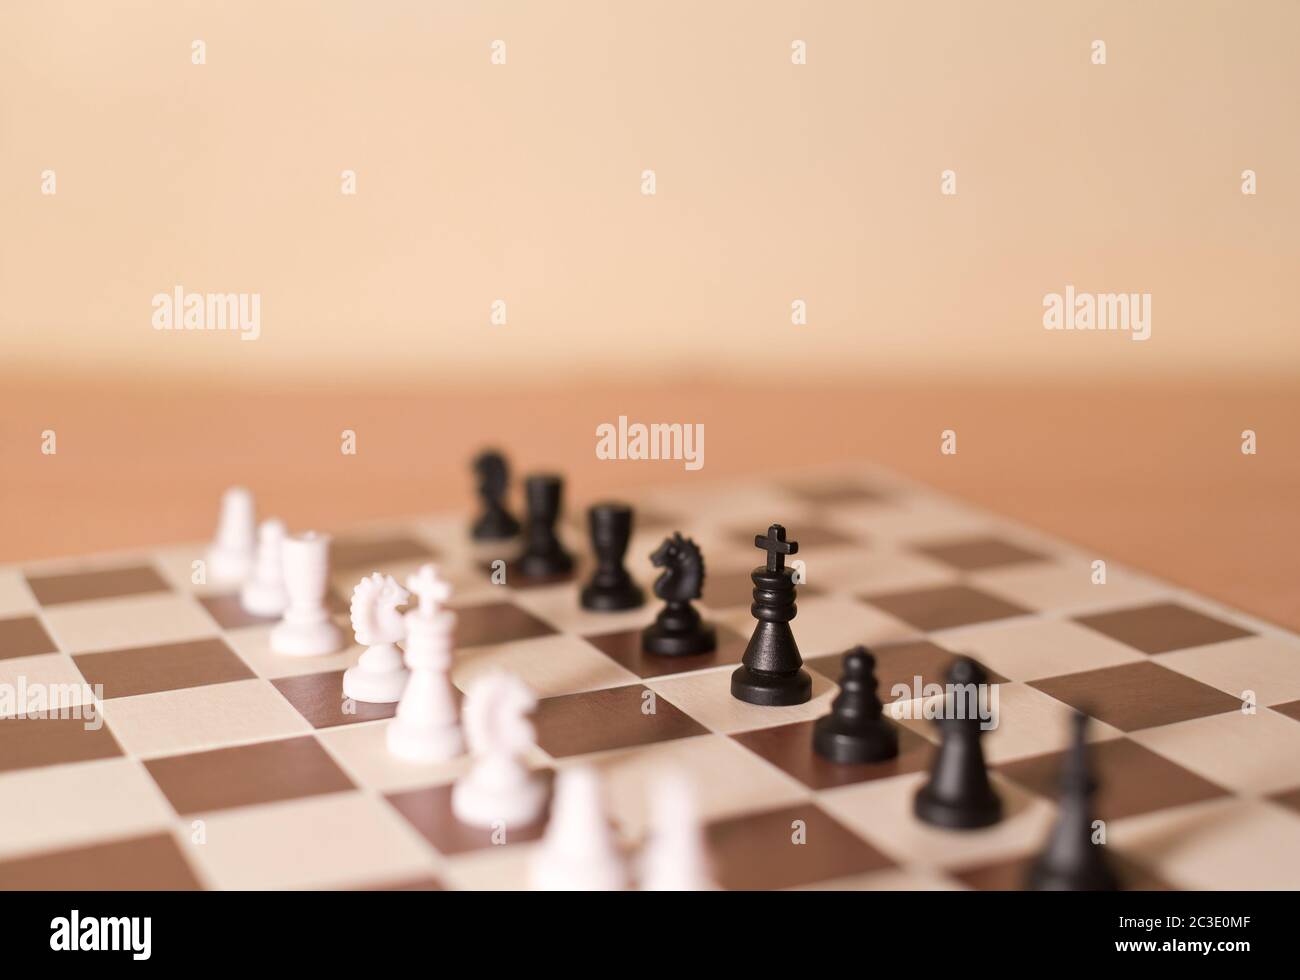 Piezas de ajedrez como metáfora - rivalidad, equipos de piezas blancas y negras se encuentran uno frente al otro Foto de stock